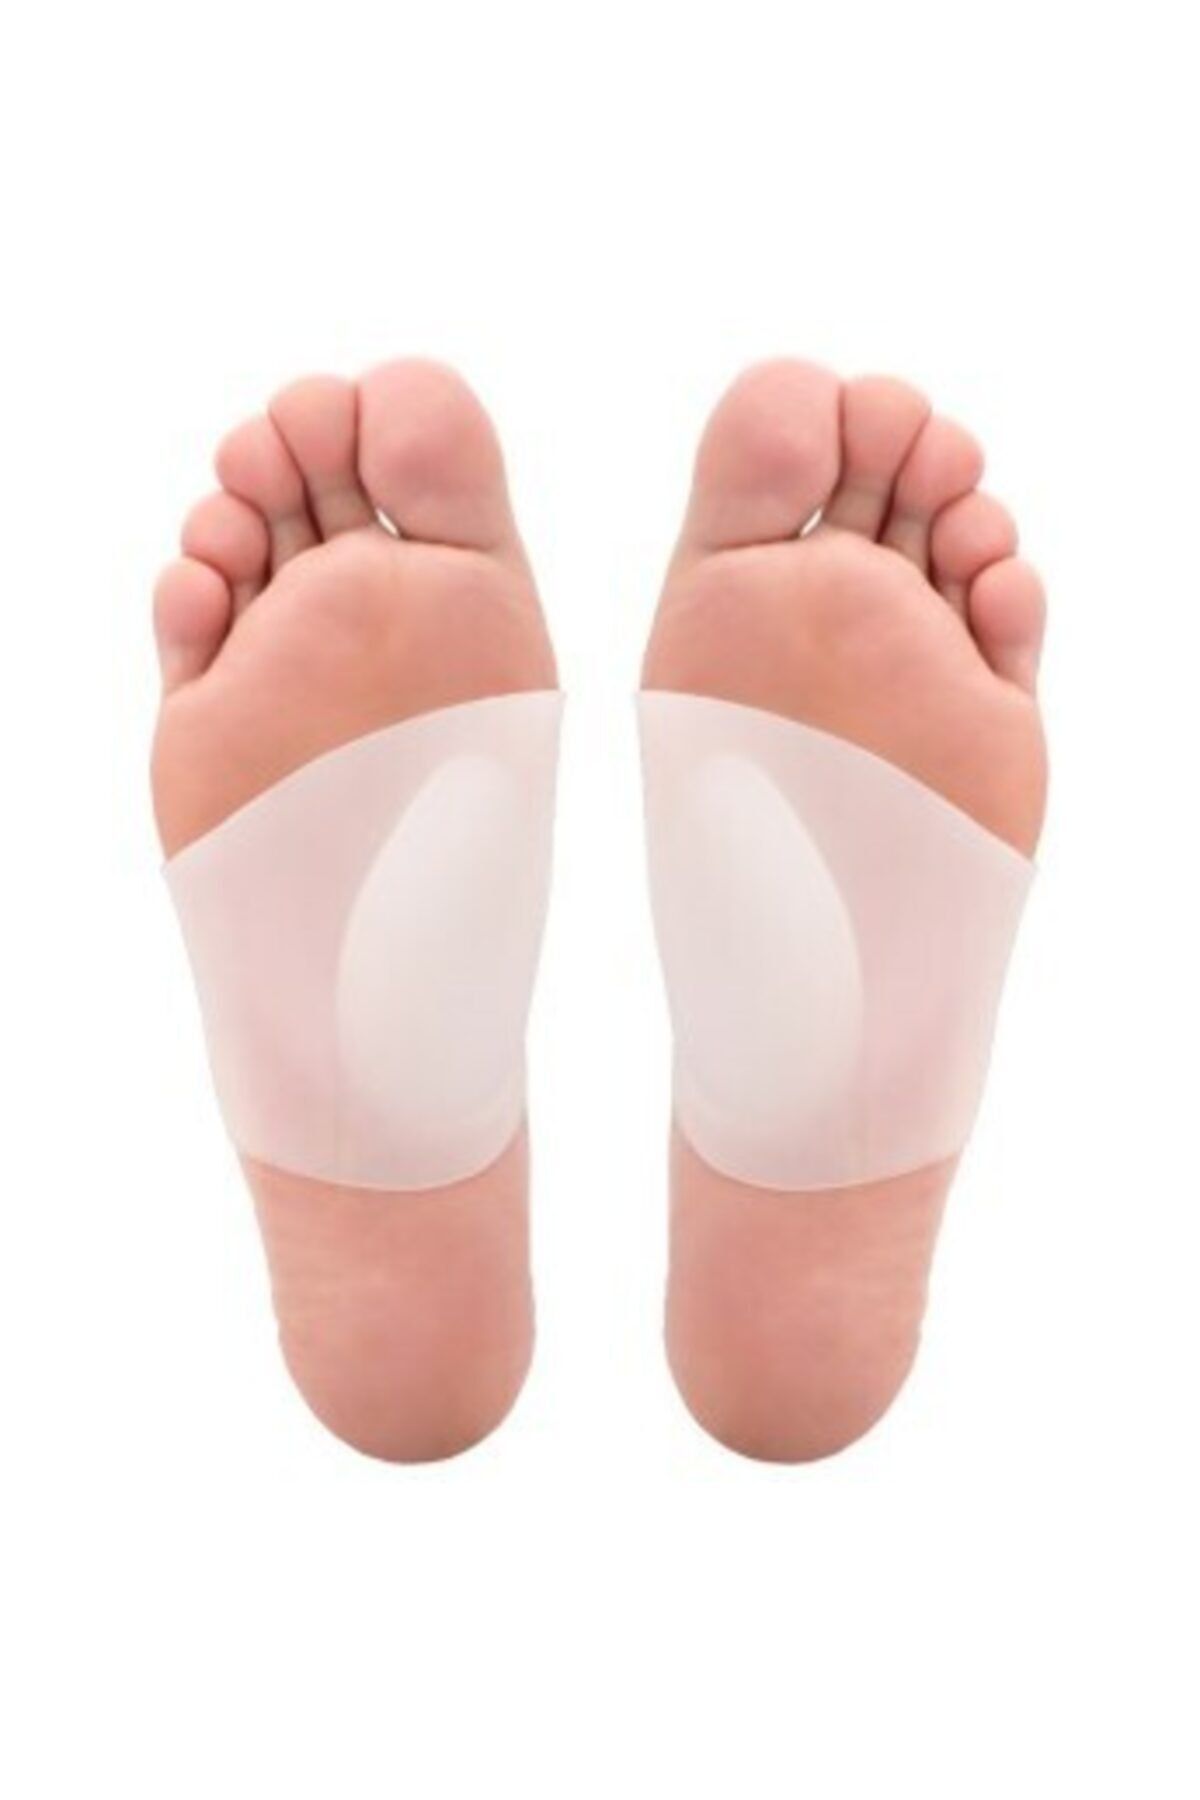 Skygo Silikon Ayak Çorabı (çift)